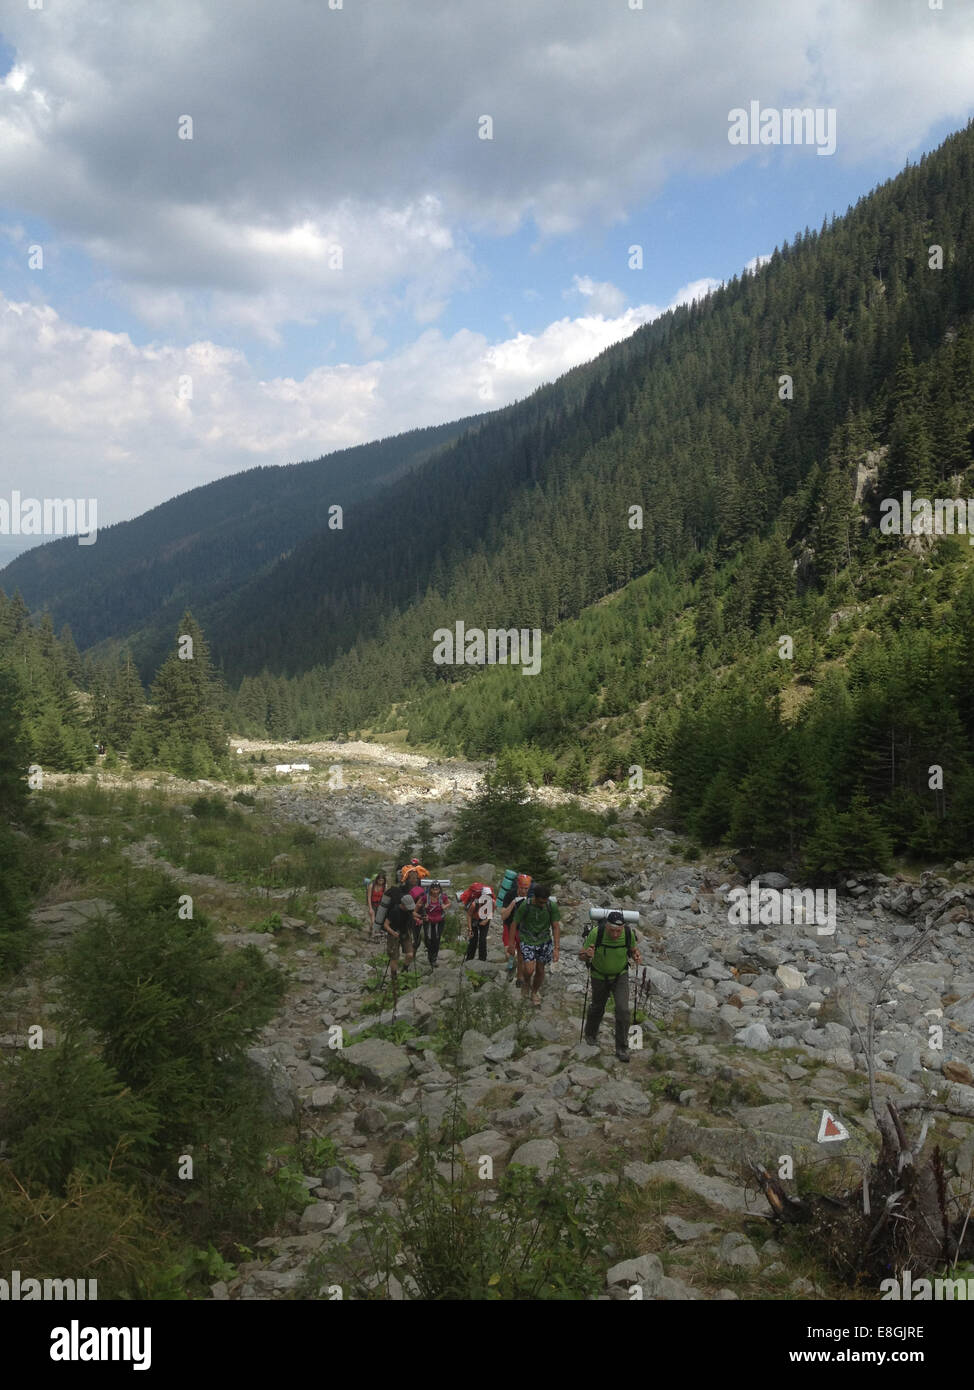 Romania, Fagaras Mountains, Hikers on mountain trail Stock Photo